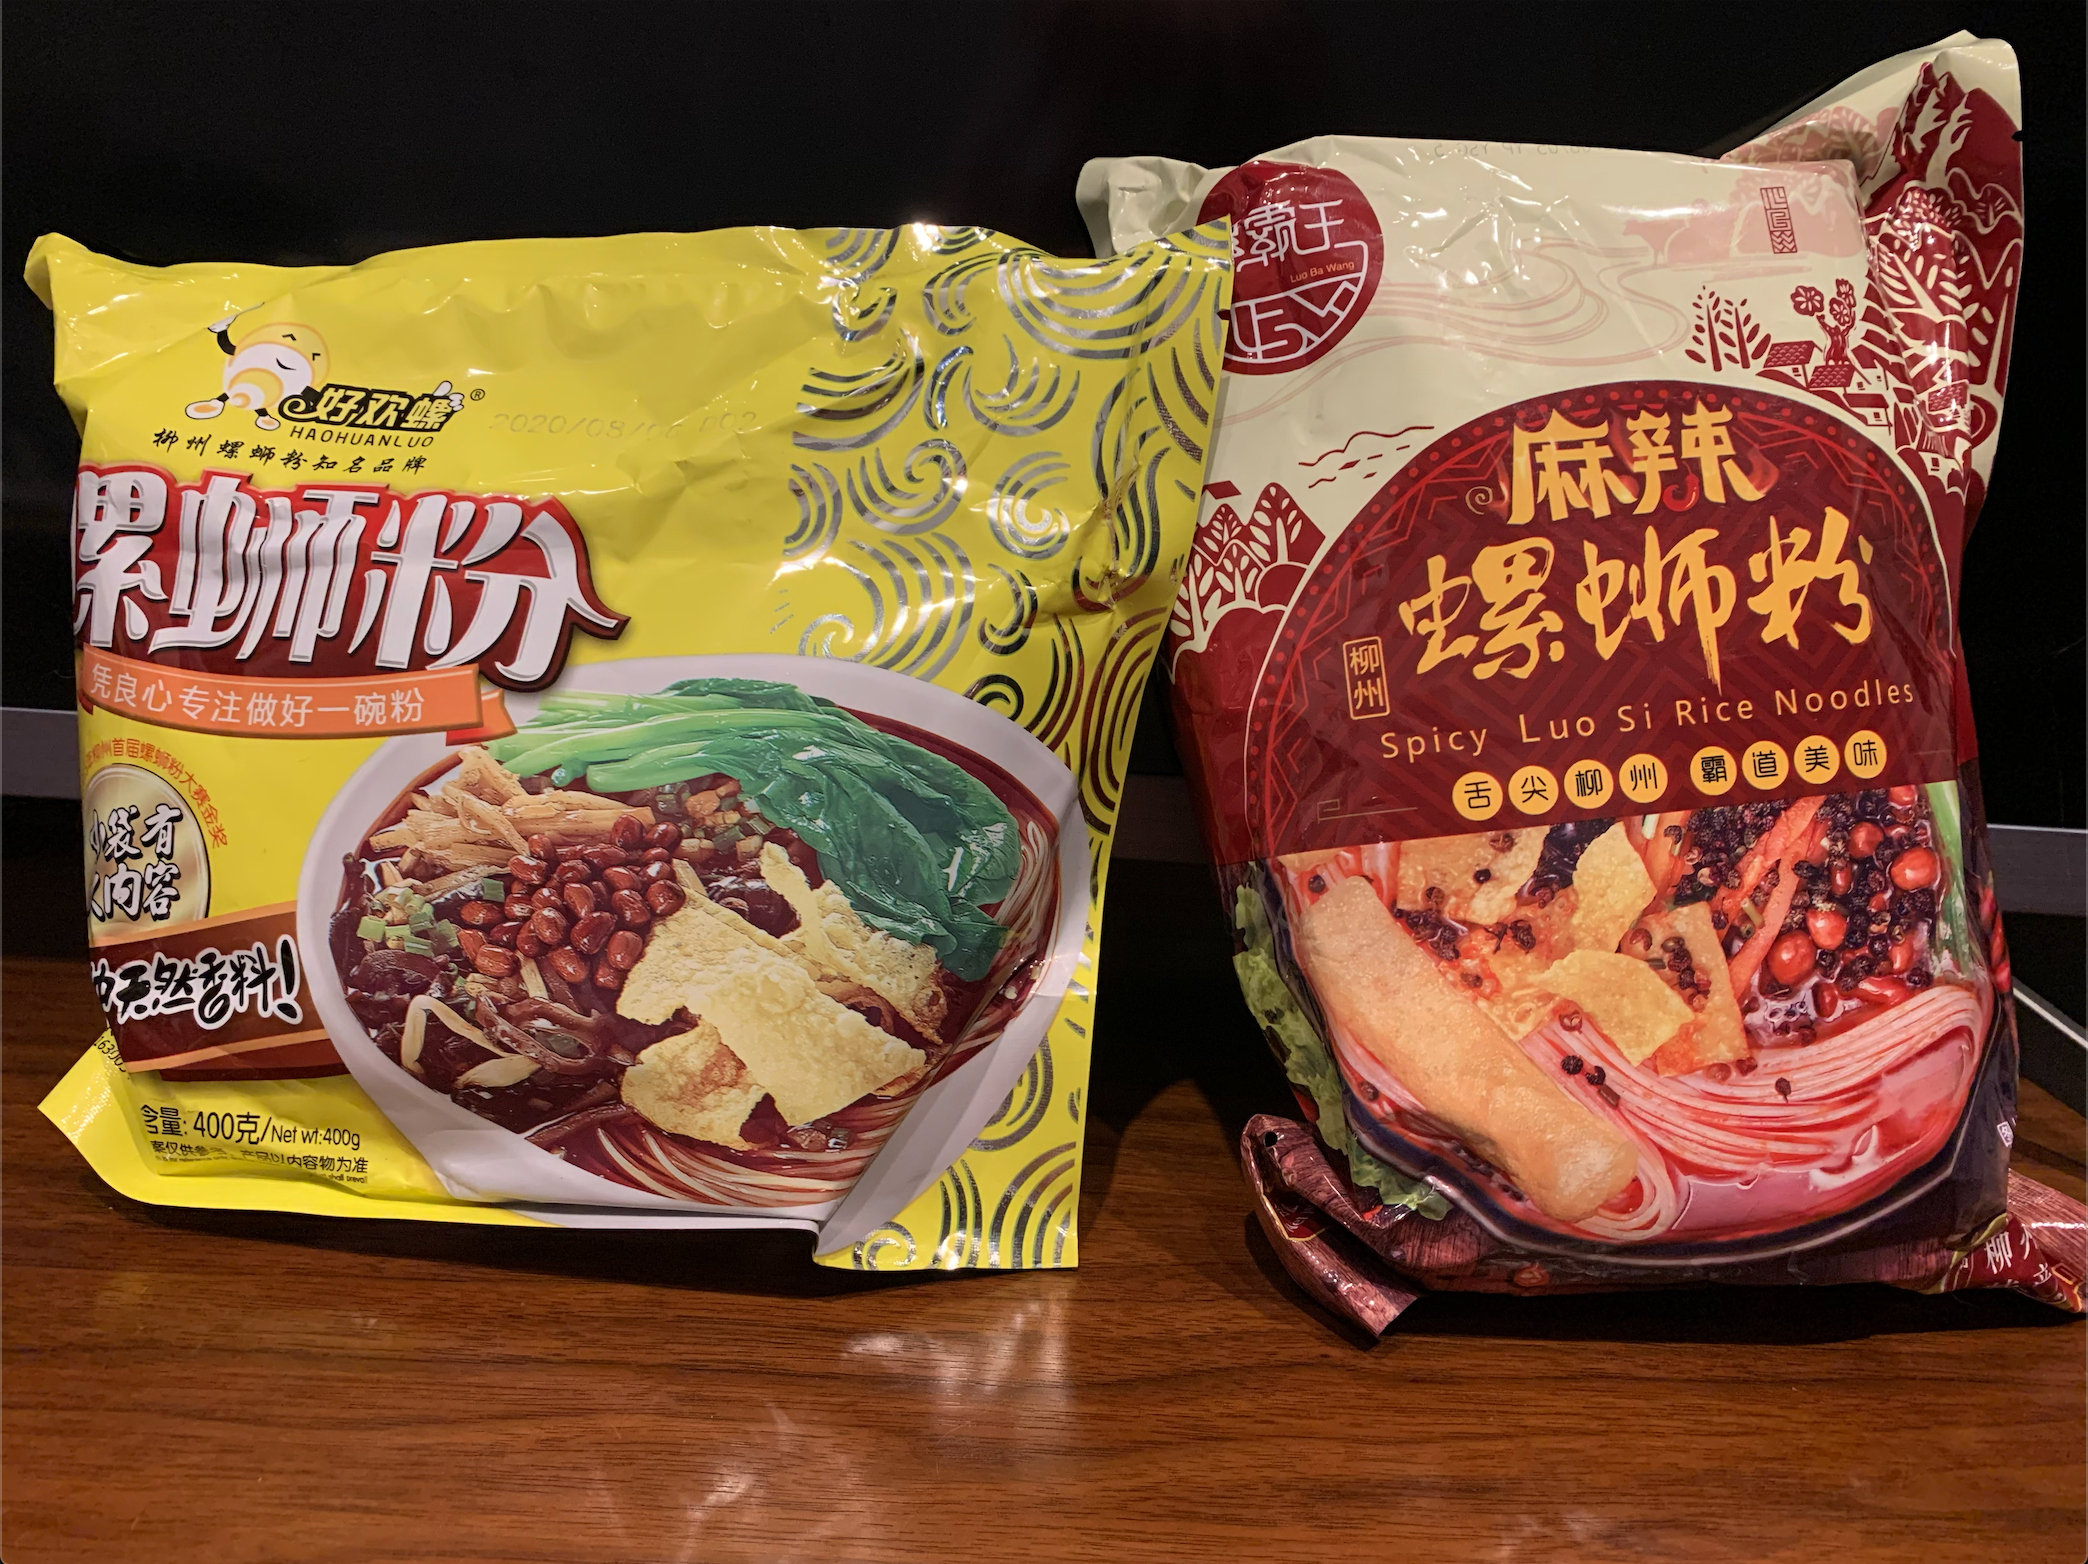 臭豆腐 はもう古い 今中国の若者がどハマりの臭いけど辛くて美味しい食べ物 映像制作 動画制作ブログ 株式会社ムービーインパクト 動画制作 映像制作会社